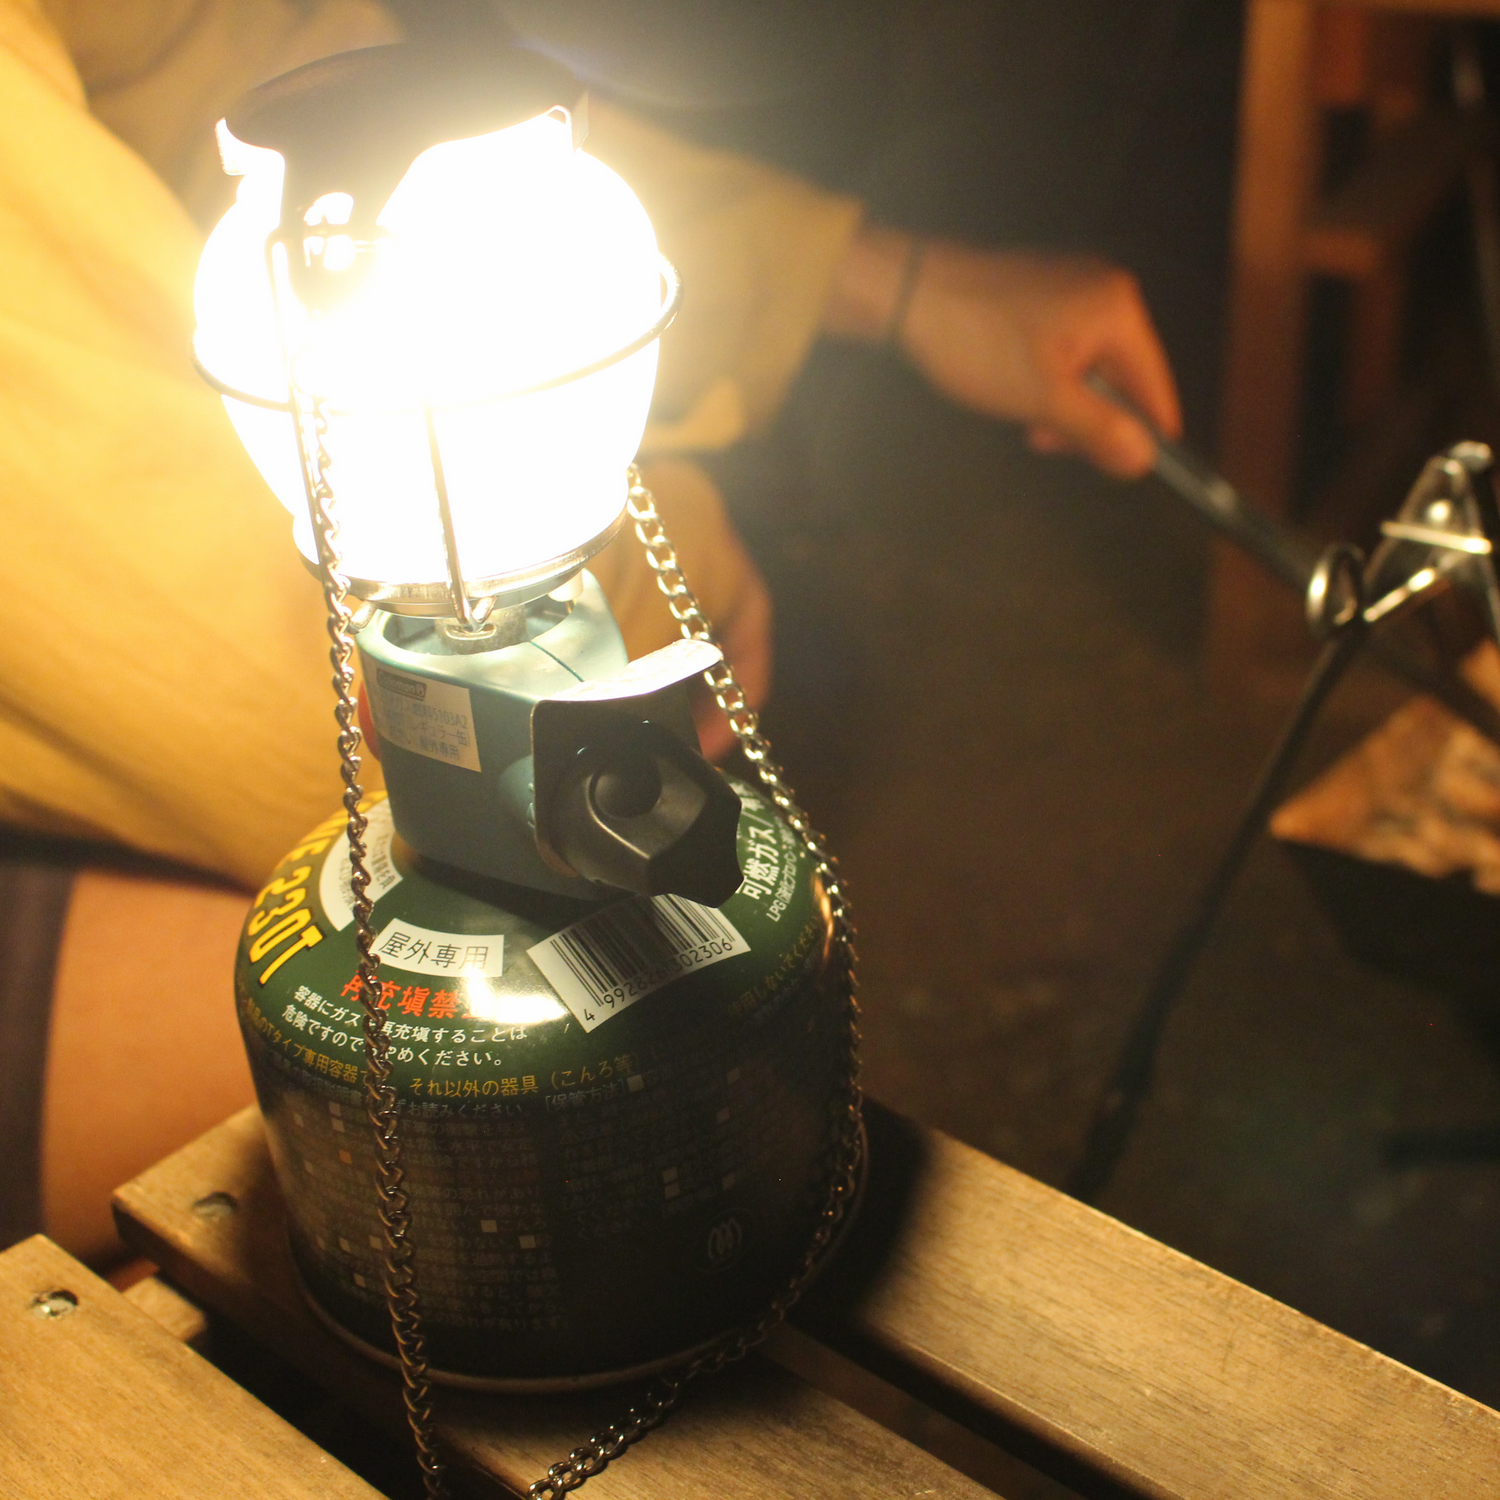 フロンティアランタン でキャンプに優しい灯りを導入しよう ランタン ライト Be Pal キャンプ アウトドア 自然派生活の情報源ビーパル